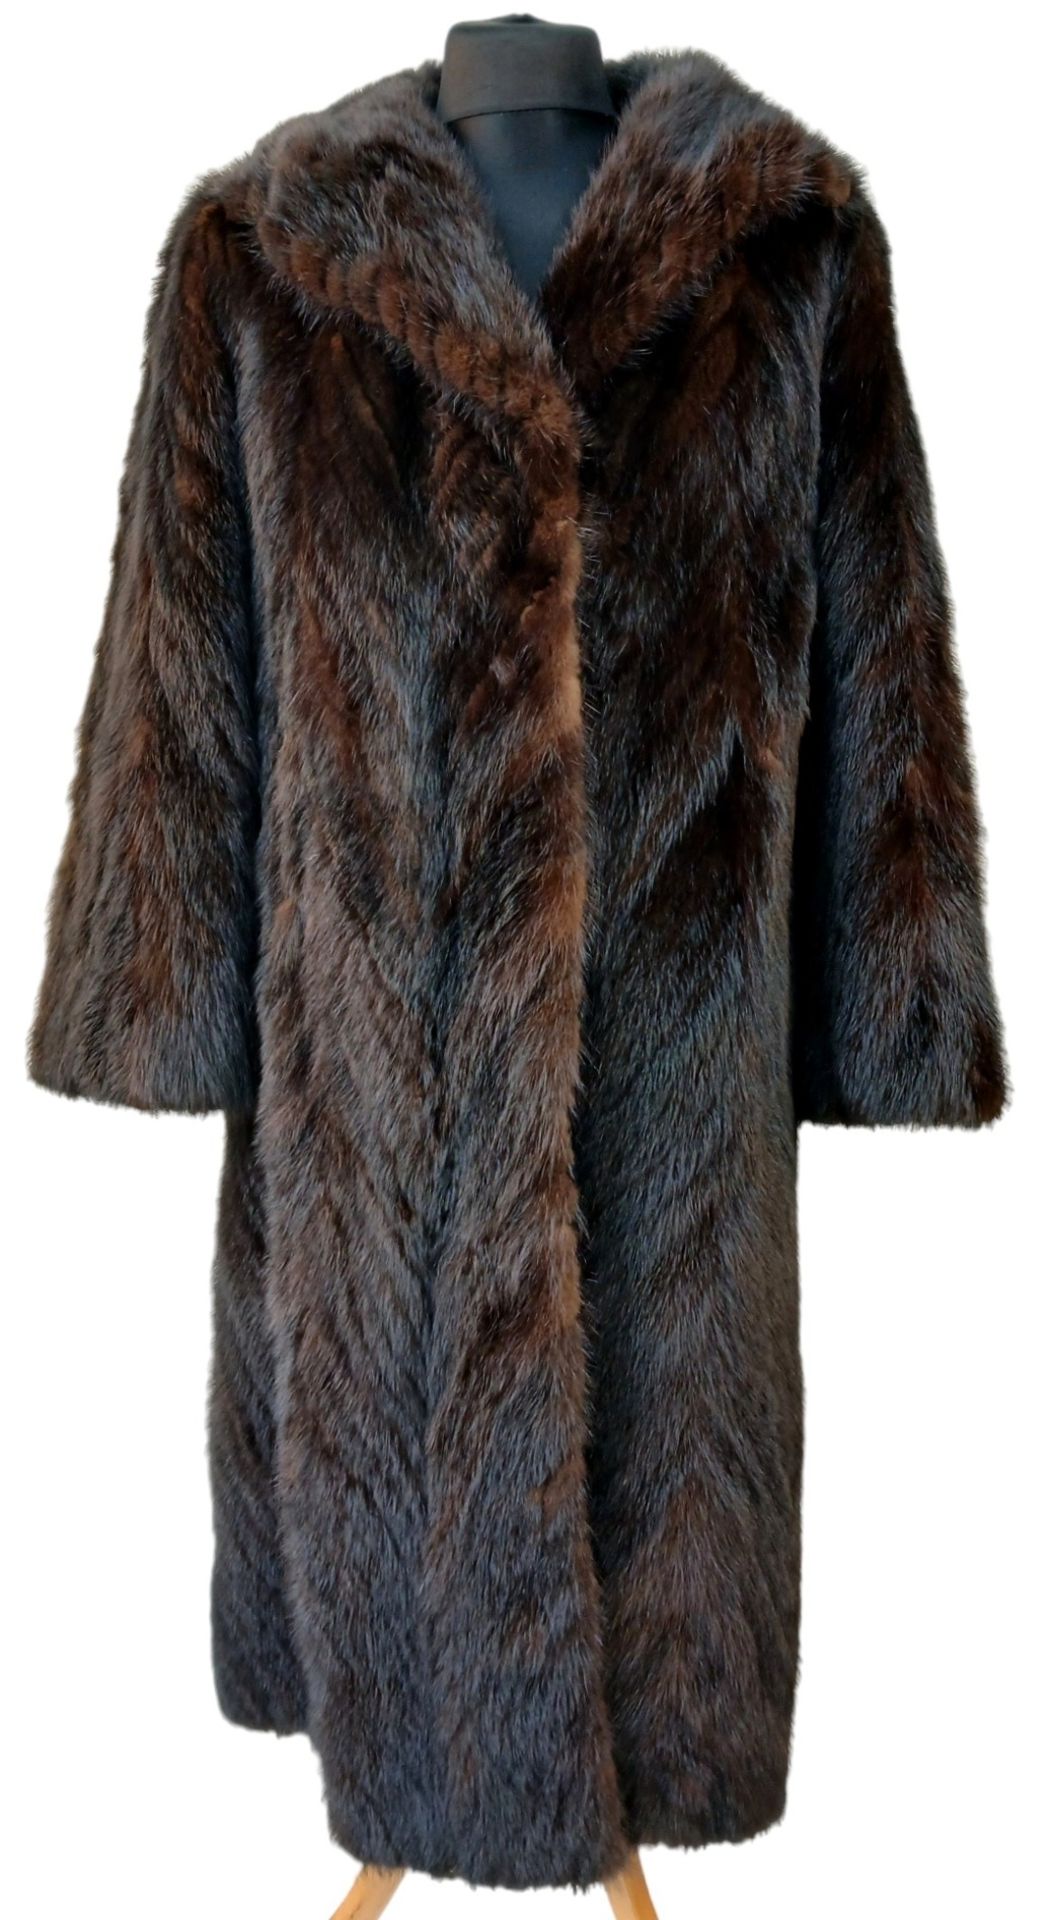 A Vintage Full Length Fur Coat - Possibly Mink/Sable.